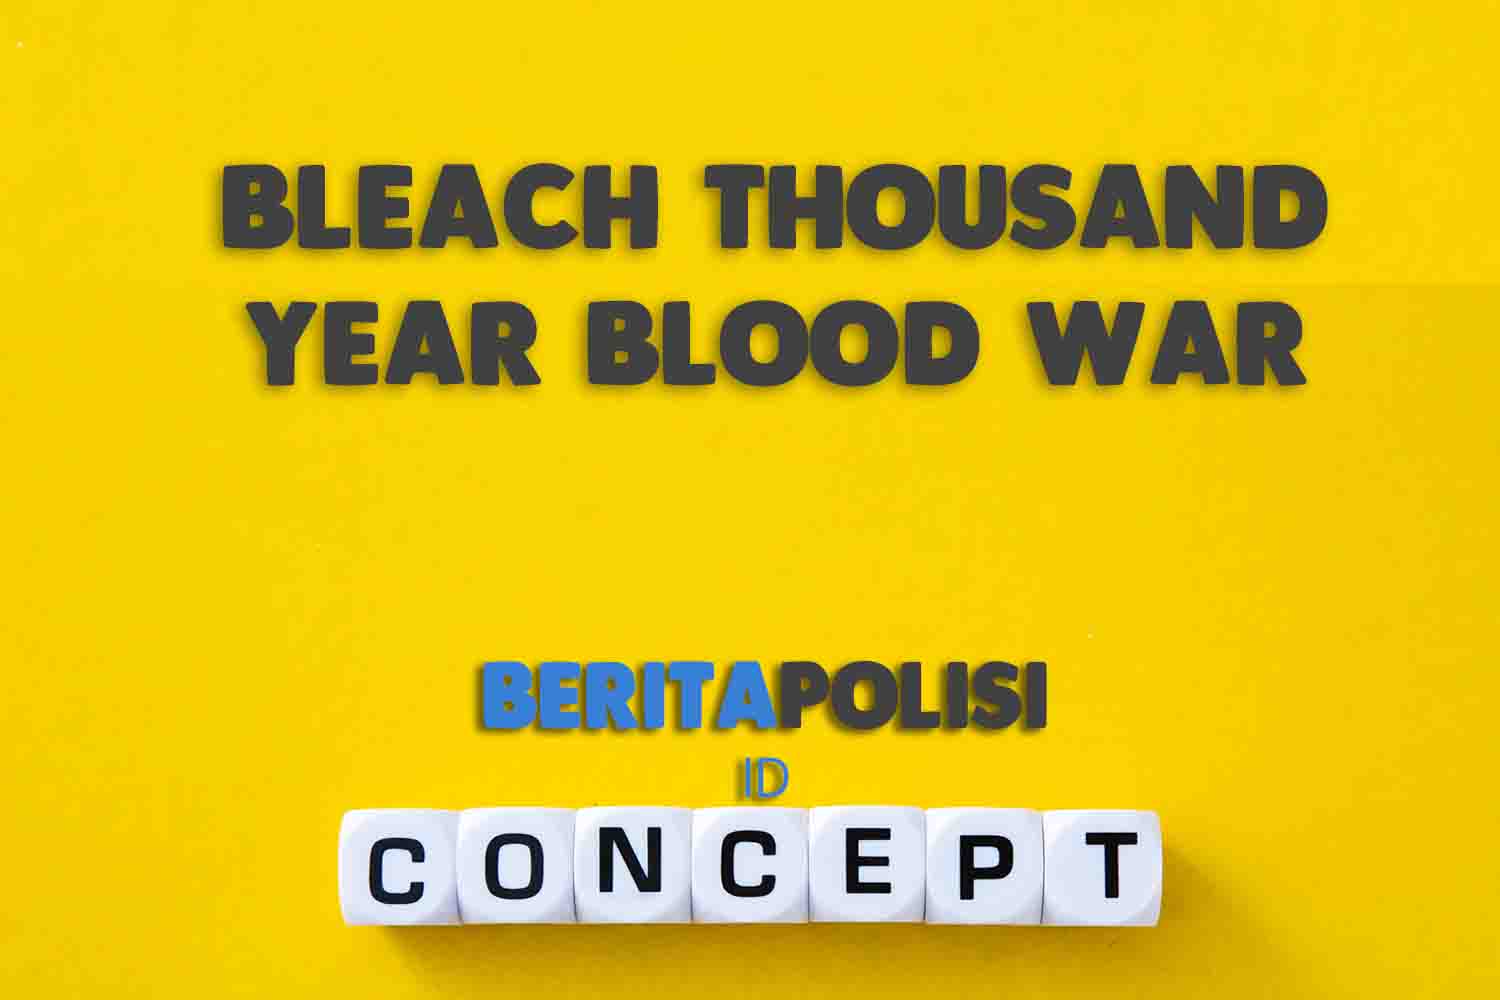 Bleach Thousand Year Blood War Episode 20 Sub Indo